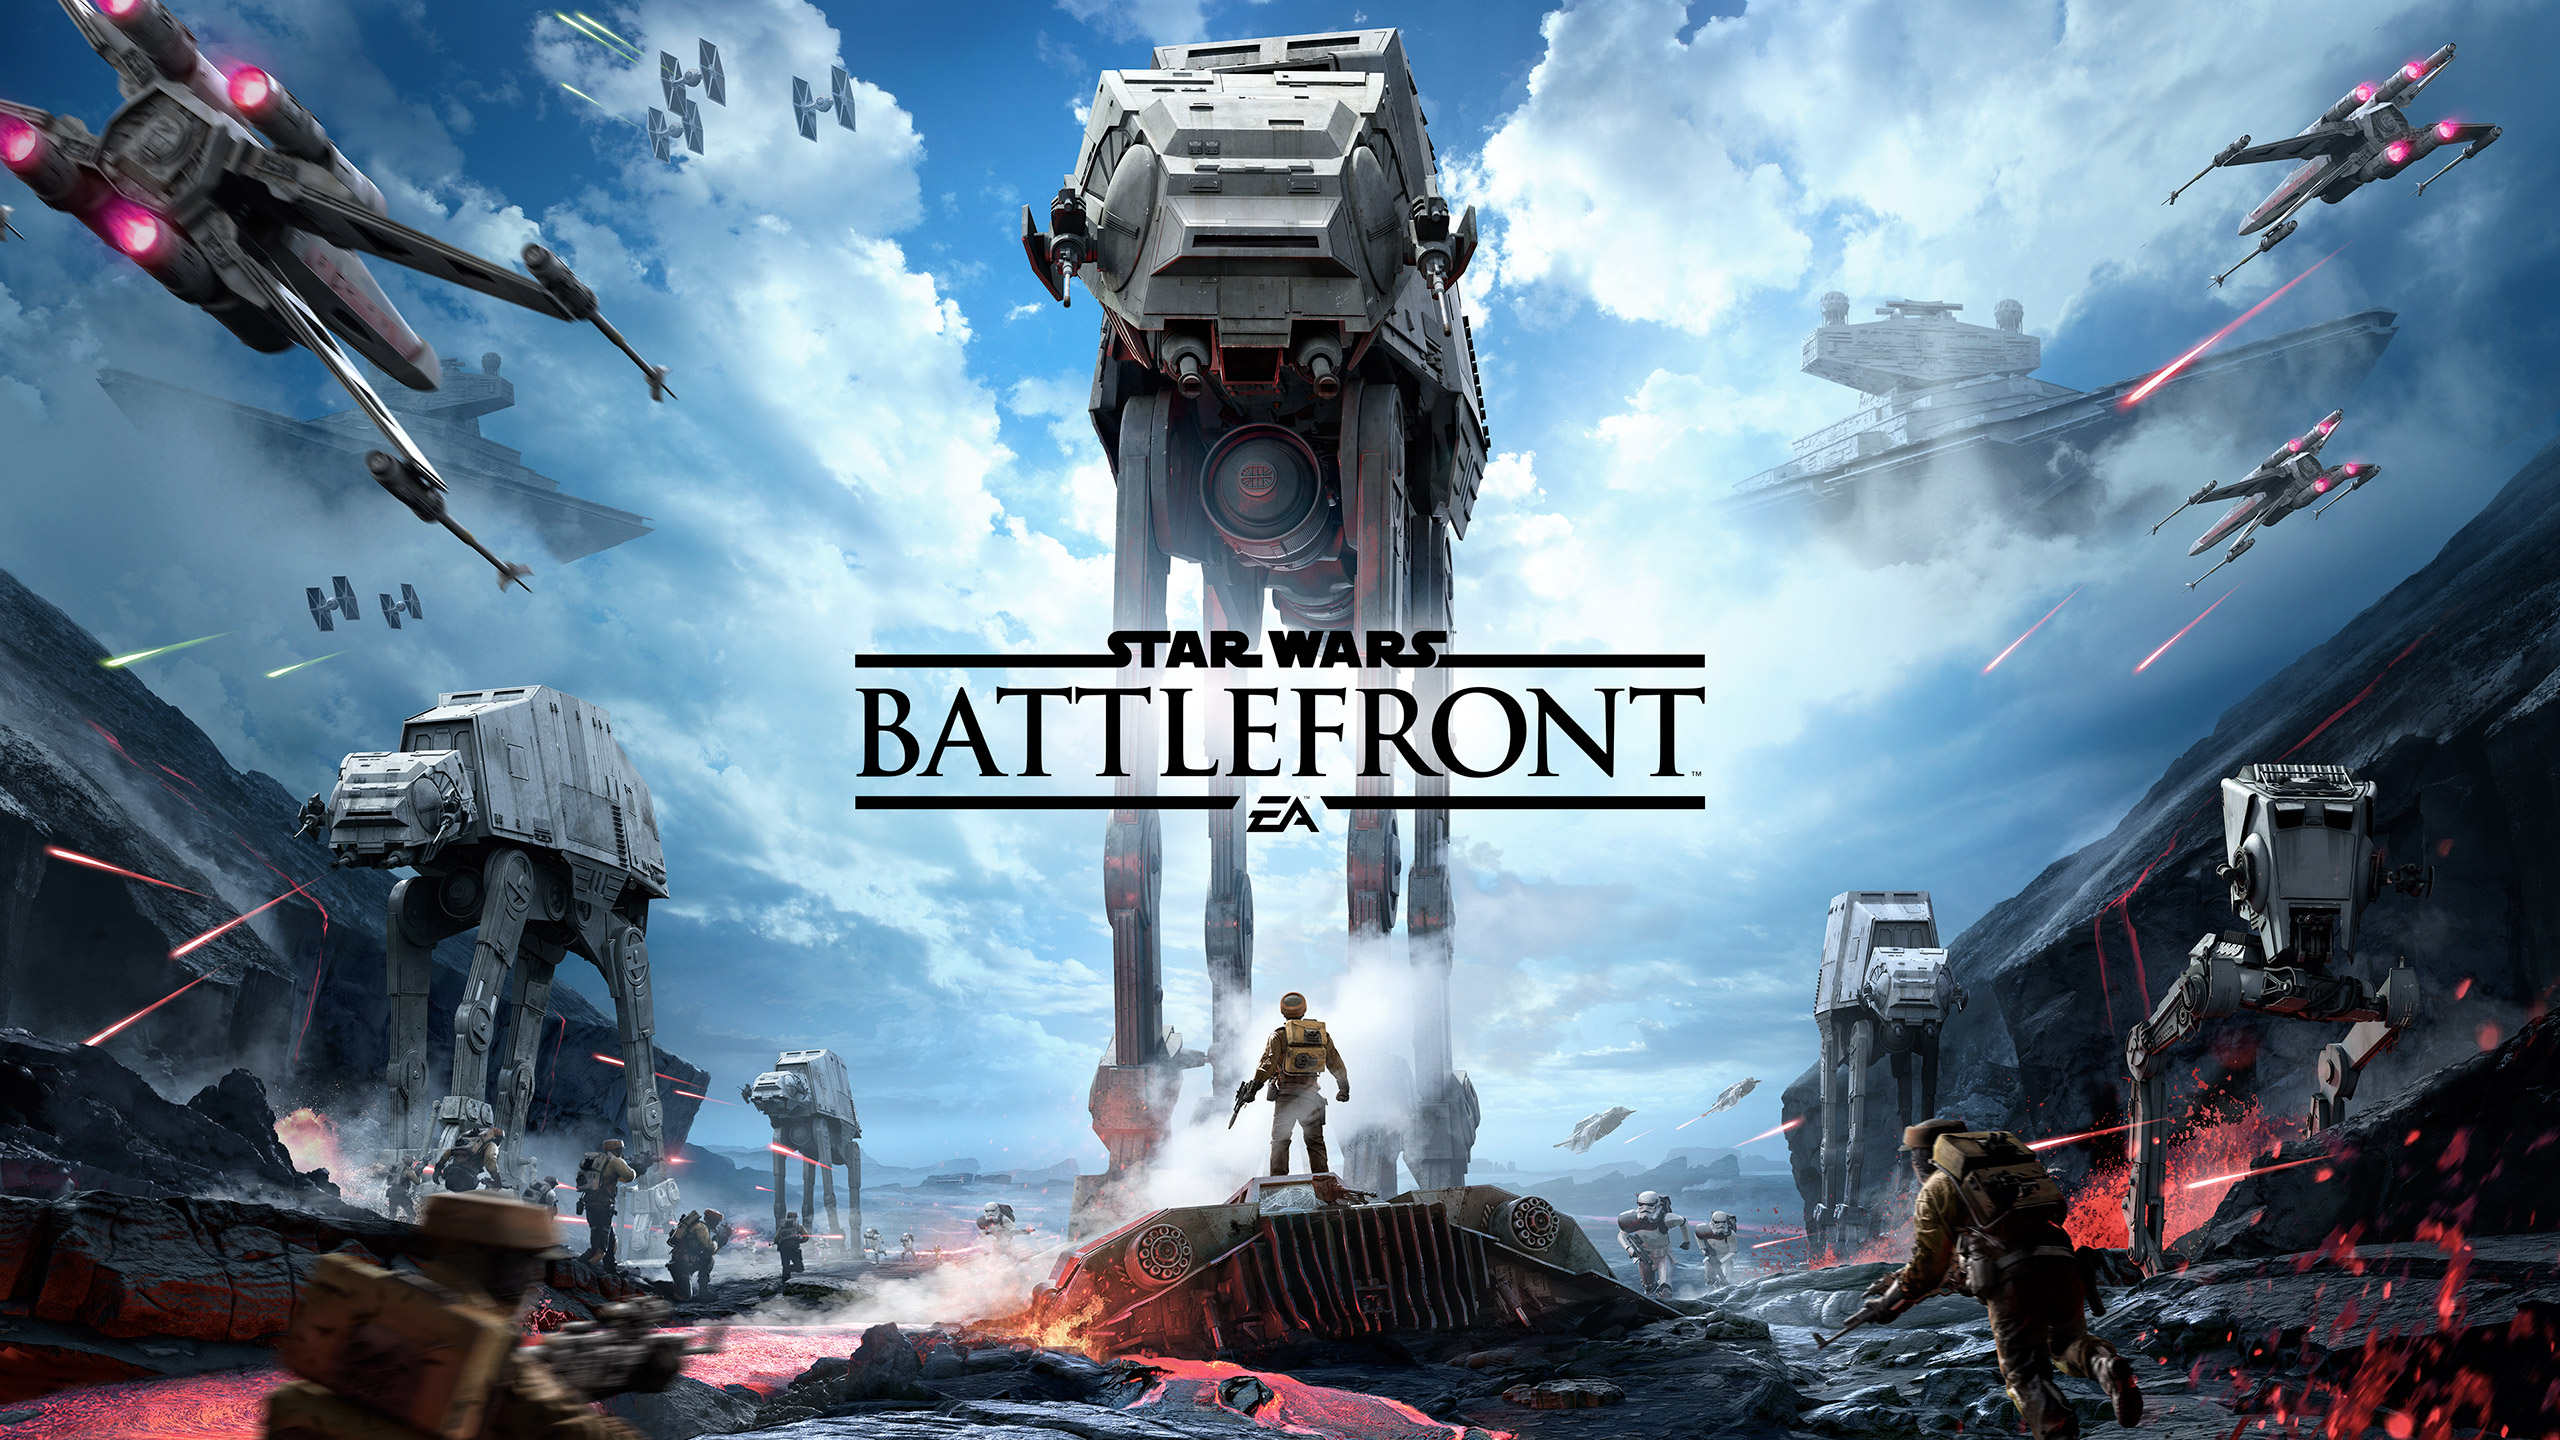 Star Wars: Battlefront (2015) promotional art